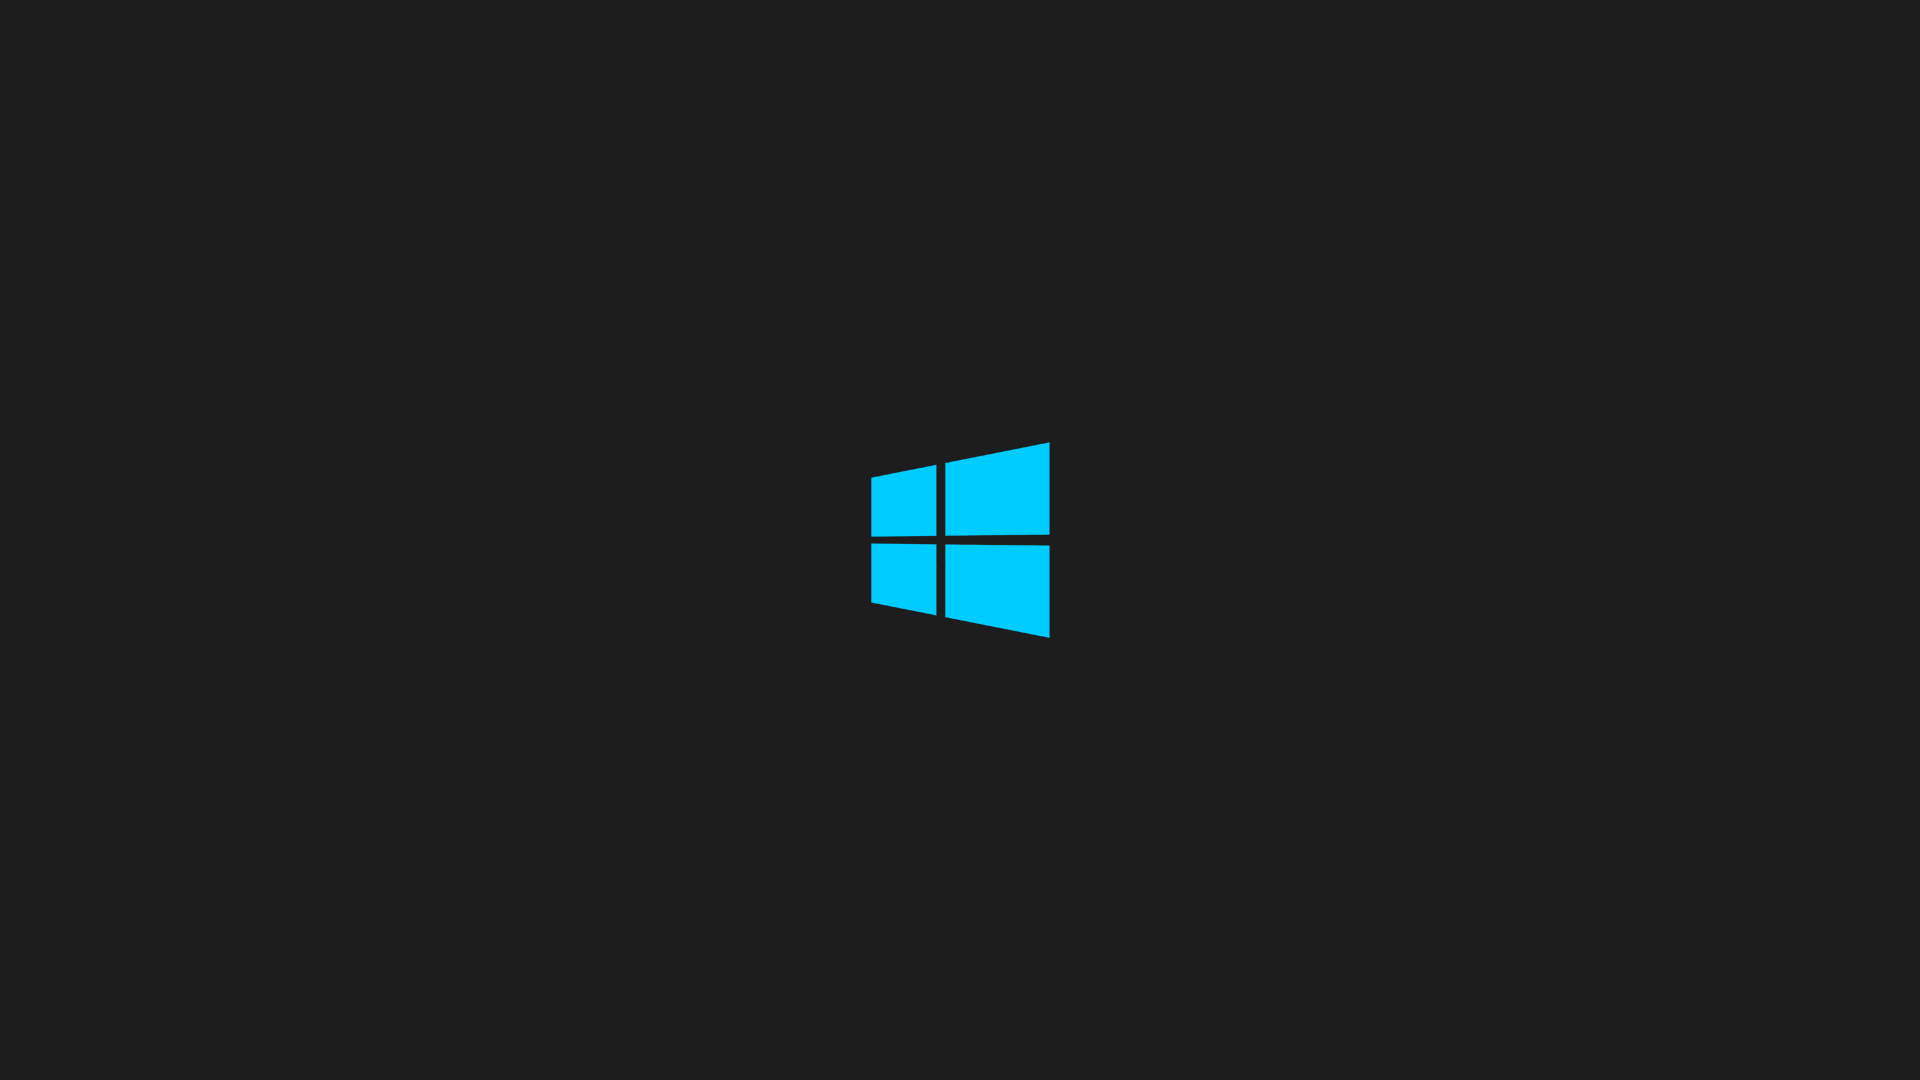 Dark Windows 10 Minimalist Wallpaper